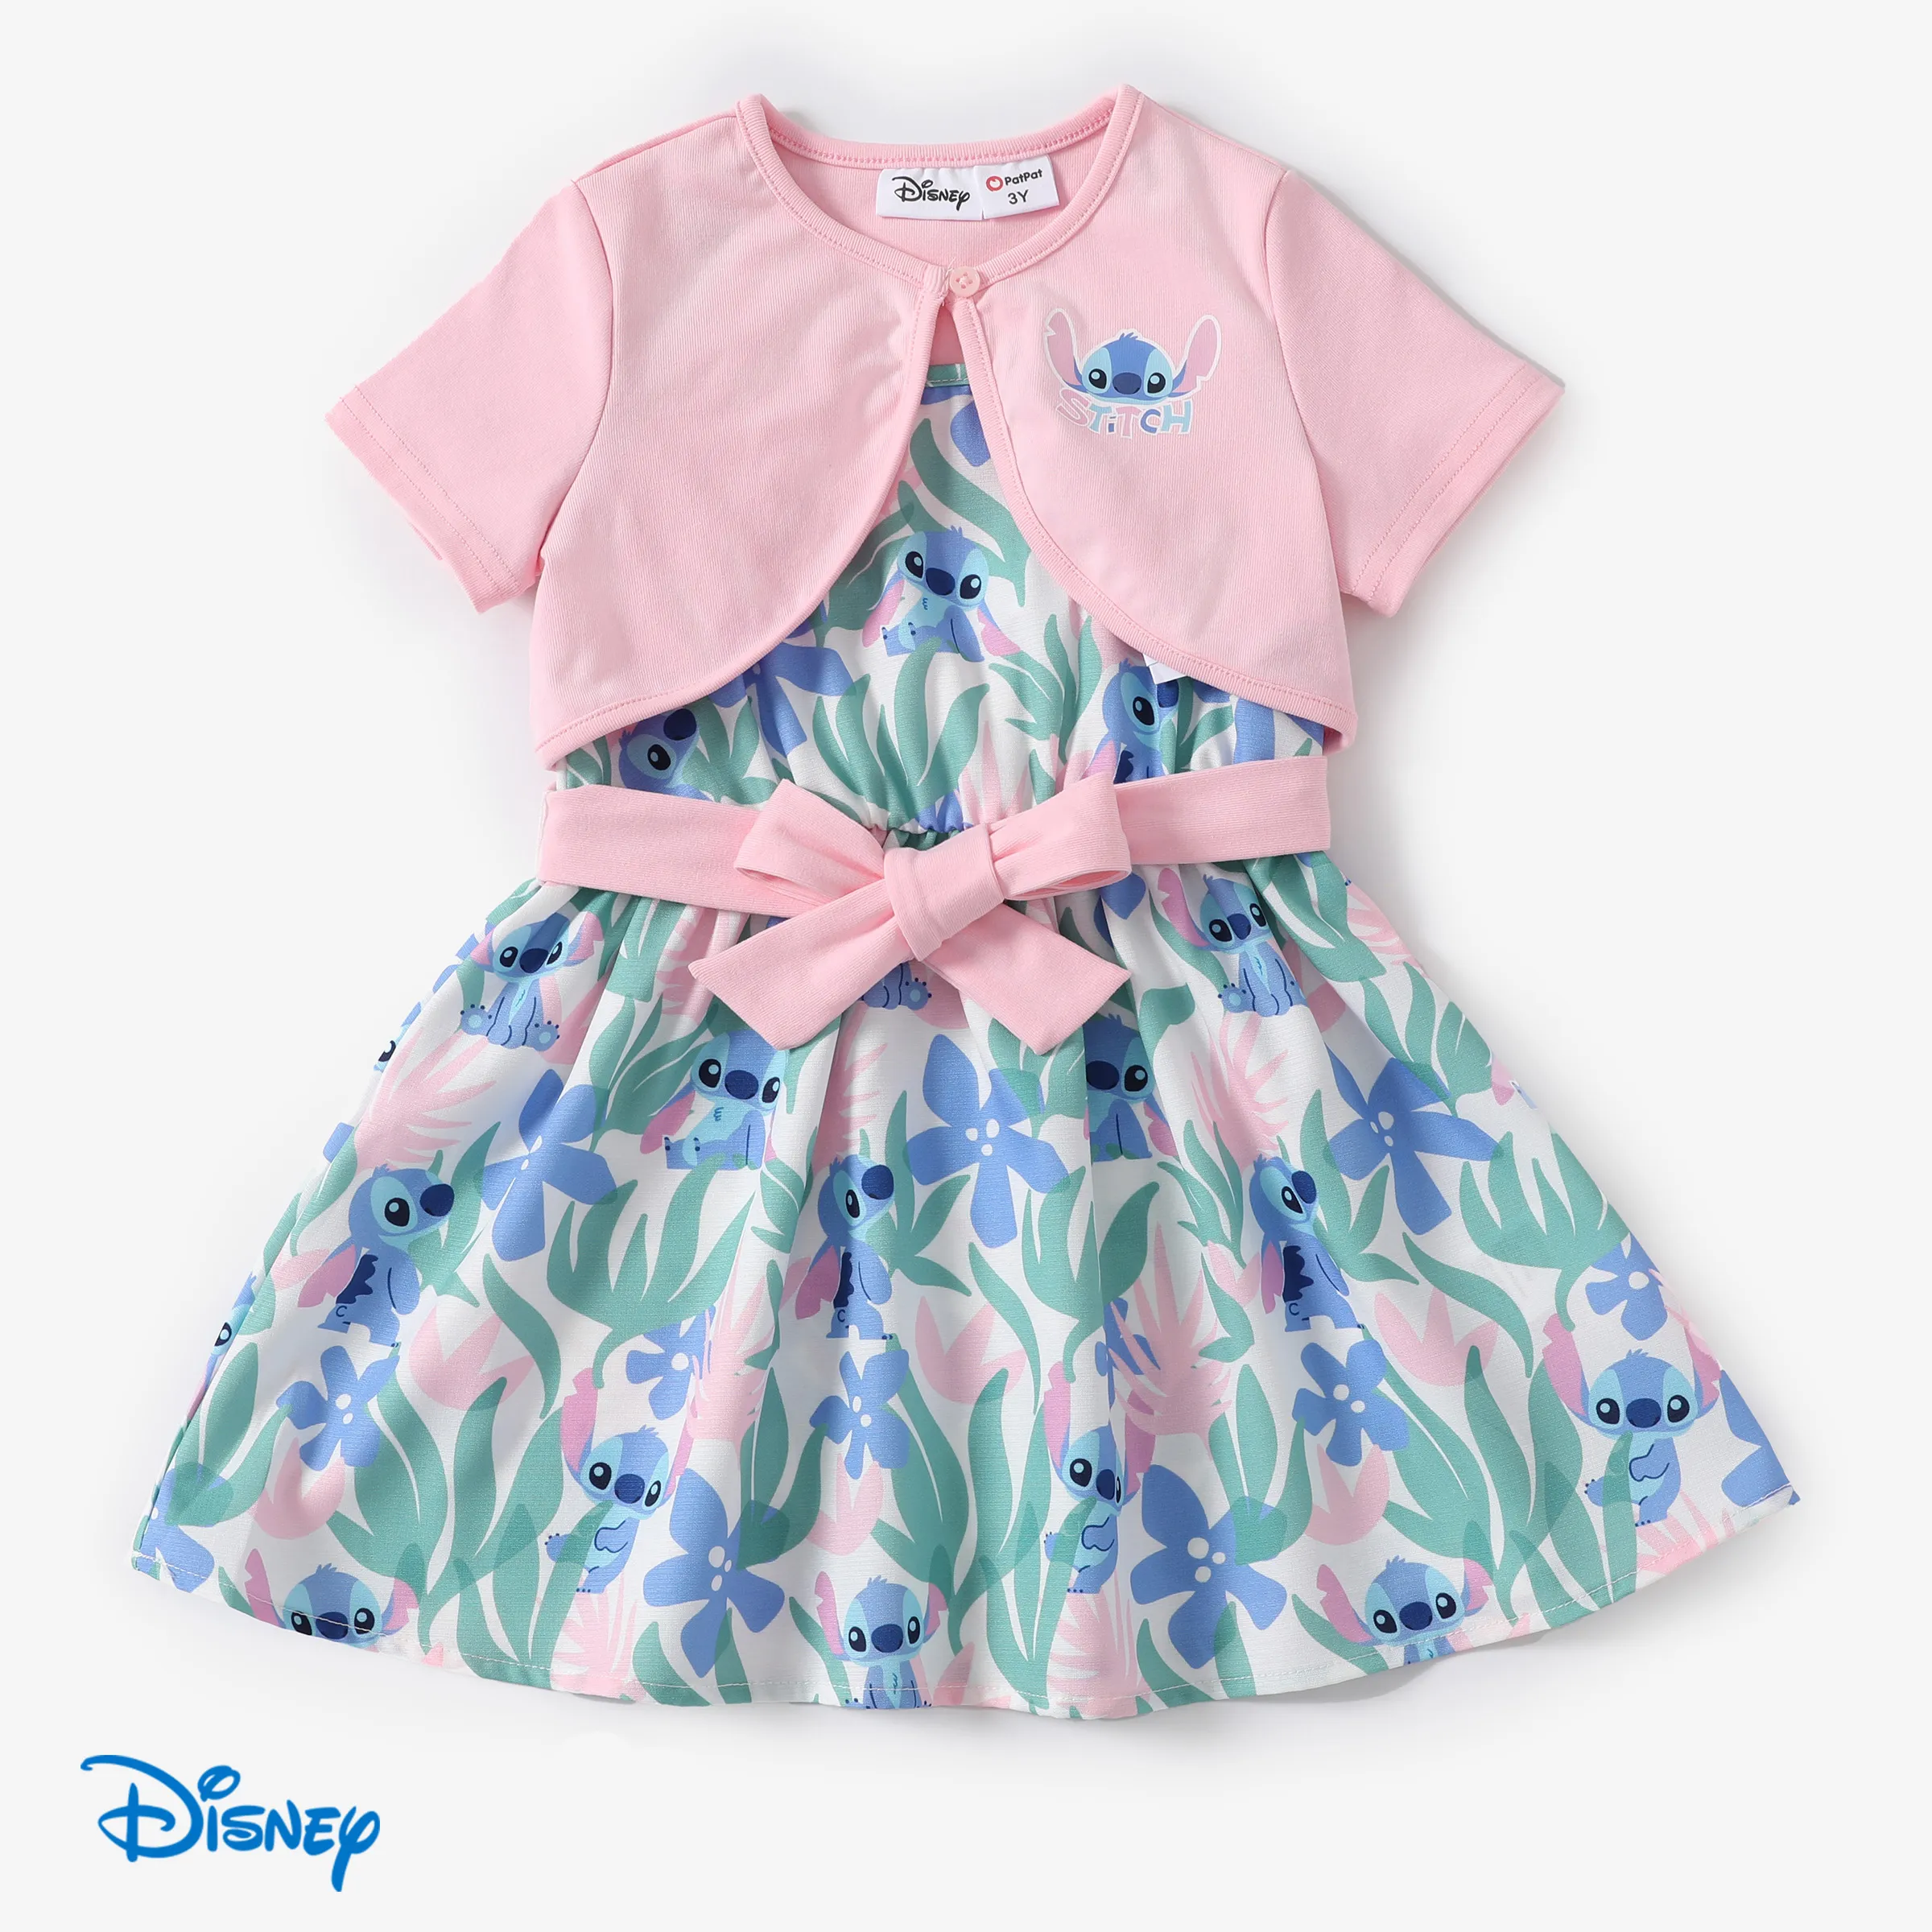 Disney Stitch Toddler Girls 2件粉紅色棉質短袖開衫搭配植物圖案無袖蝴蝶結腰部無袖連衣裙套裝